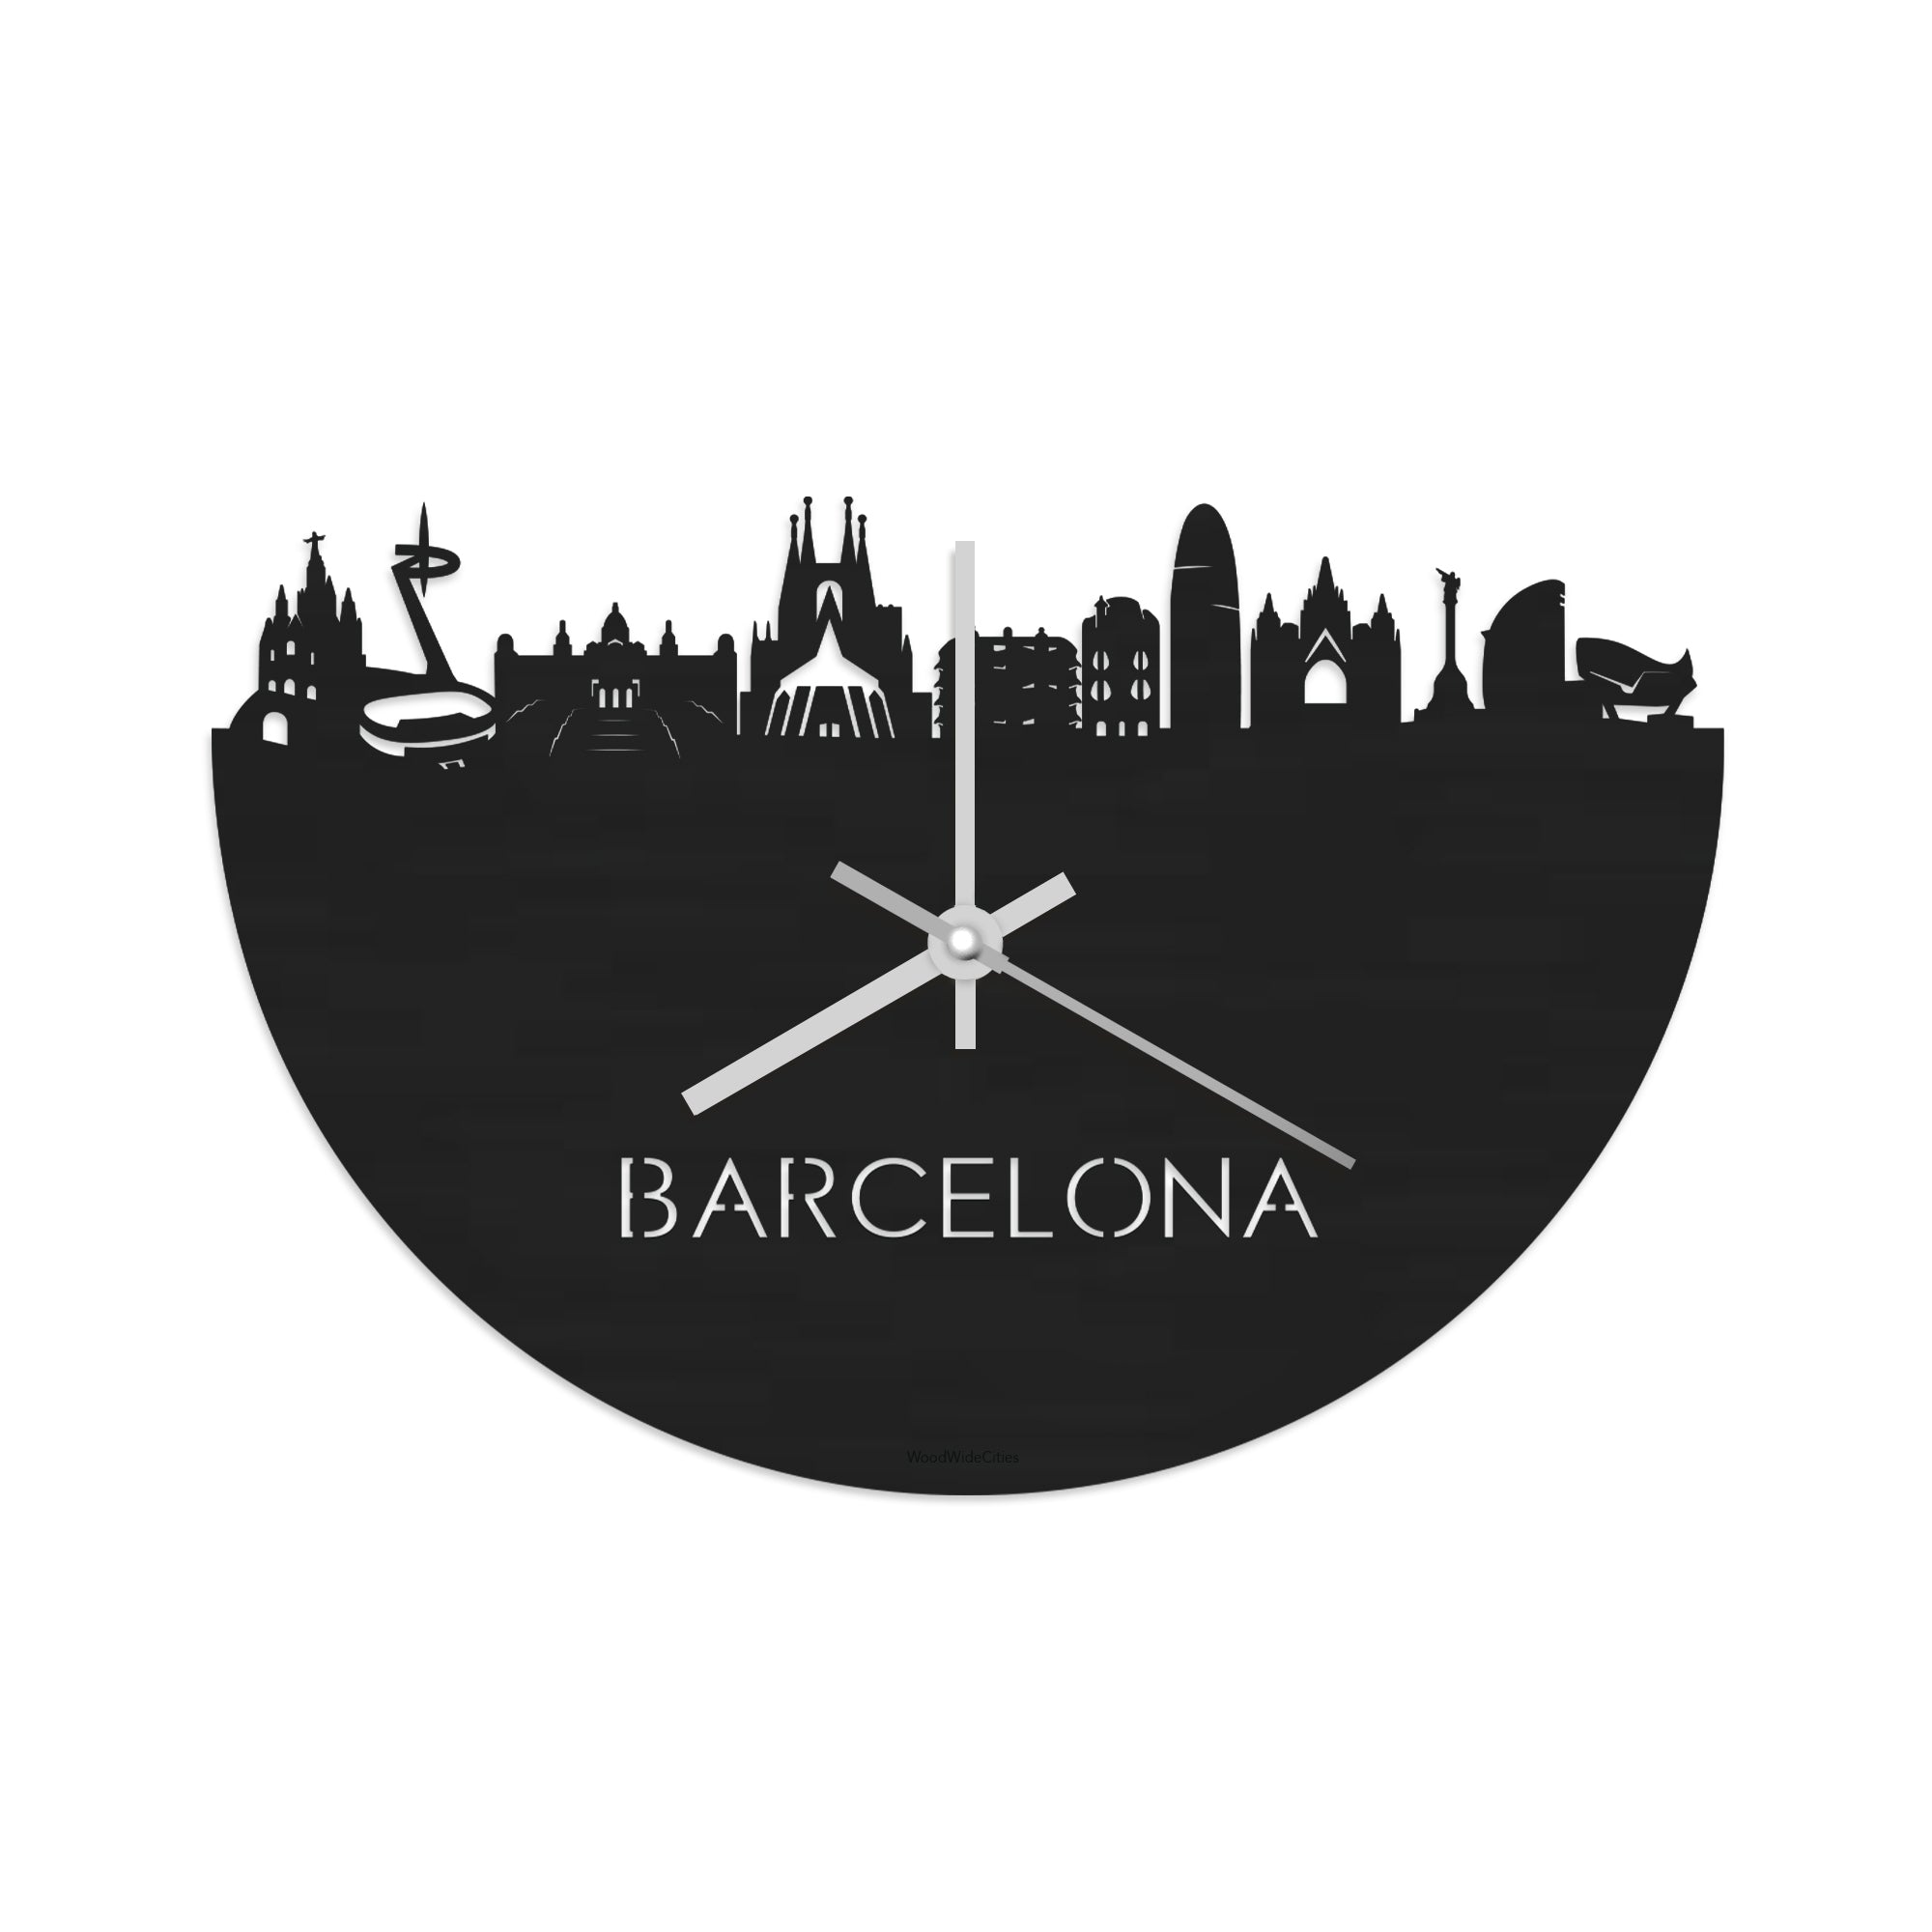 Skyline Klok Barcelona Black Zwart houten cadeau wanddecoratie relatiegeschenk van WoodWideCities